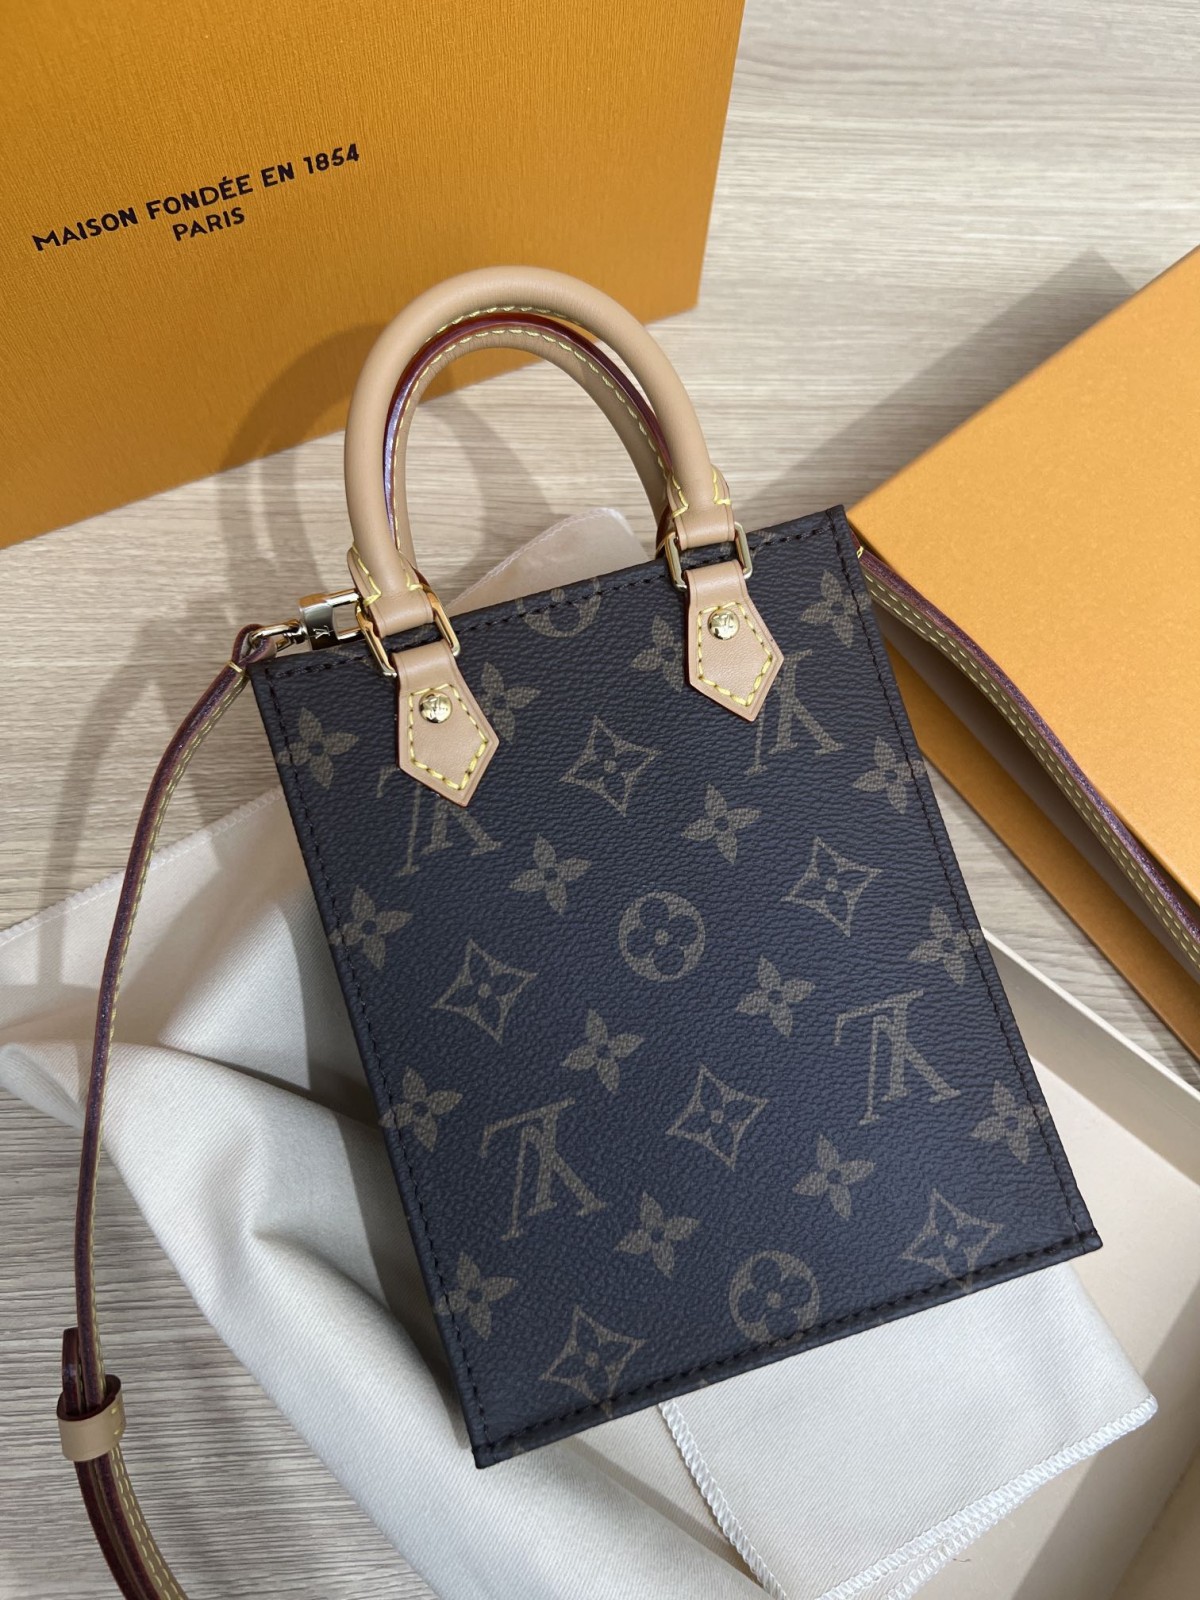 How good quality is a Shebag Louis Vuitton PETIT SAC PLAT bag（2023 udpated）-Интернет-магазин поддельной сумки Louis Vuitton лучшего качества, копия дизайнерской сумки ru